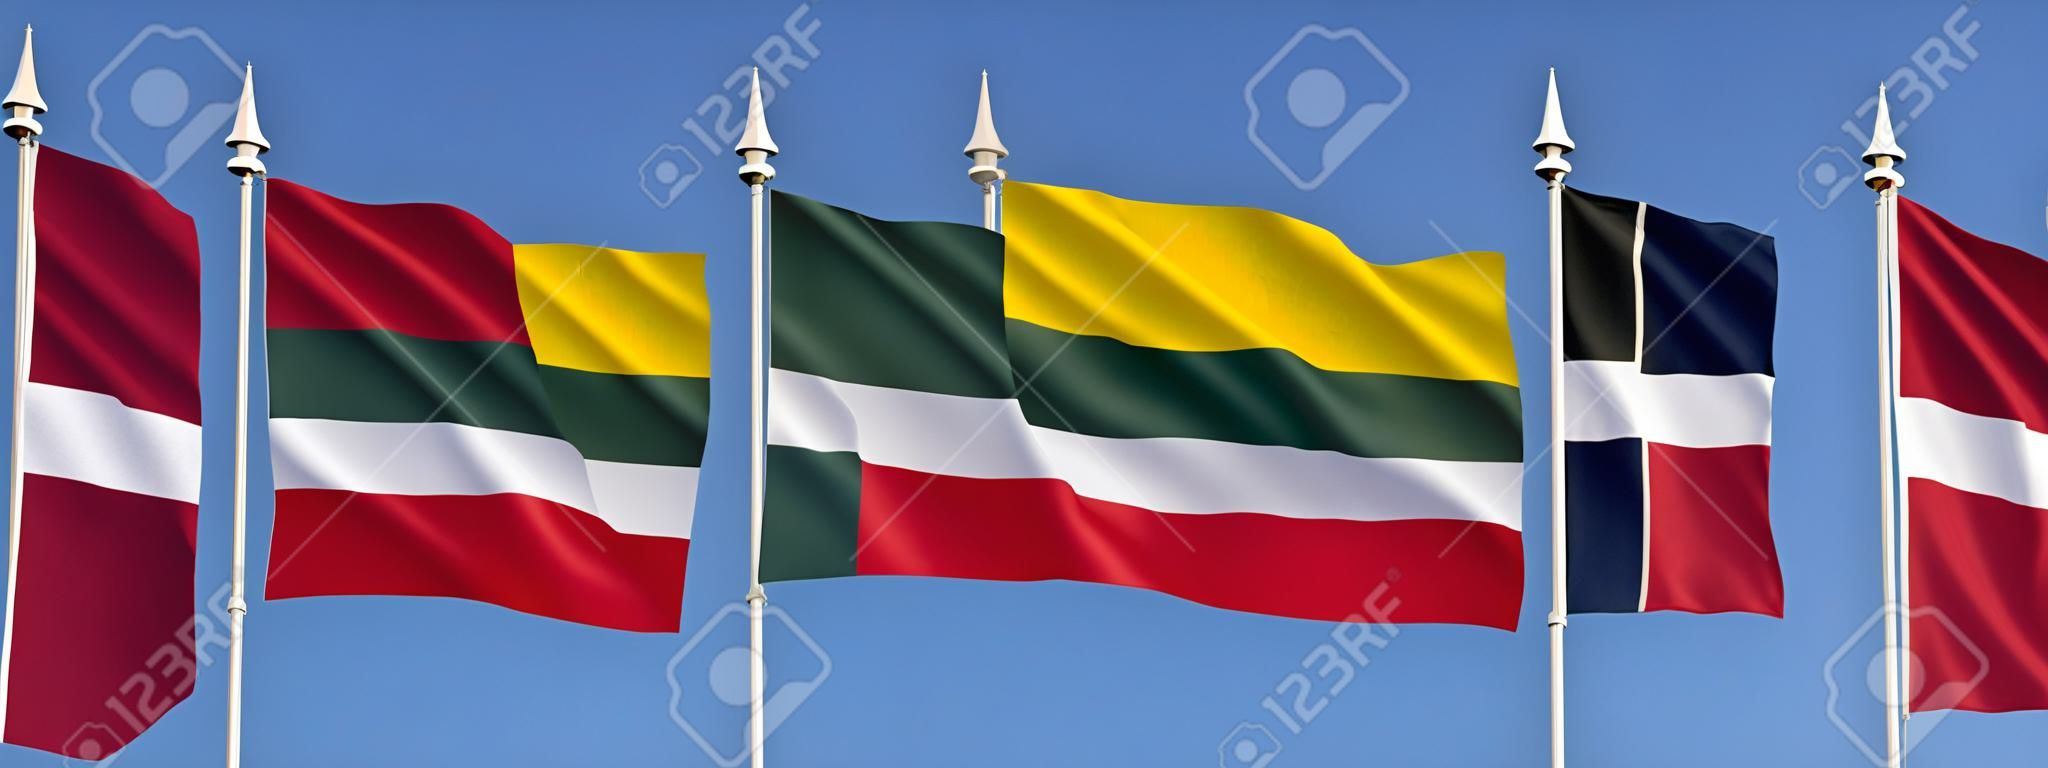 Flagi państw bałtyckich - Litwy, Łotwy i Estonii.